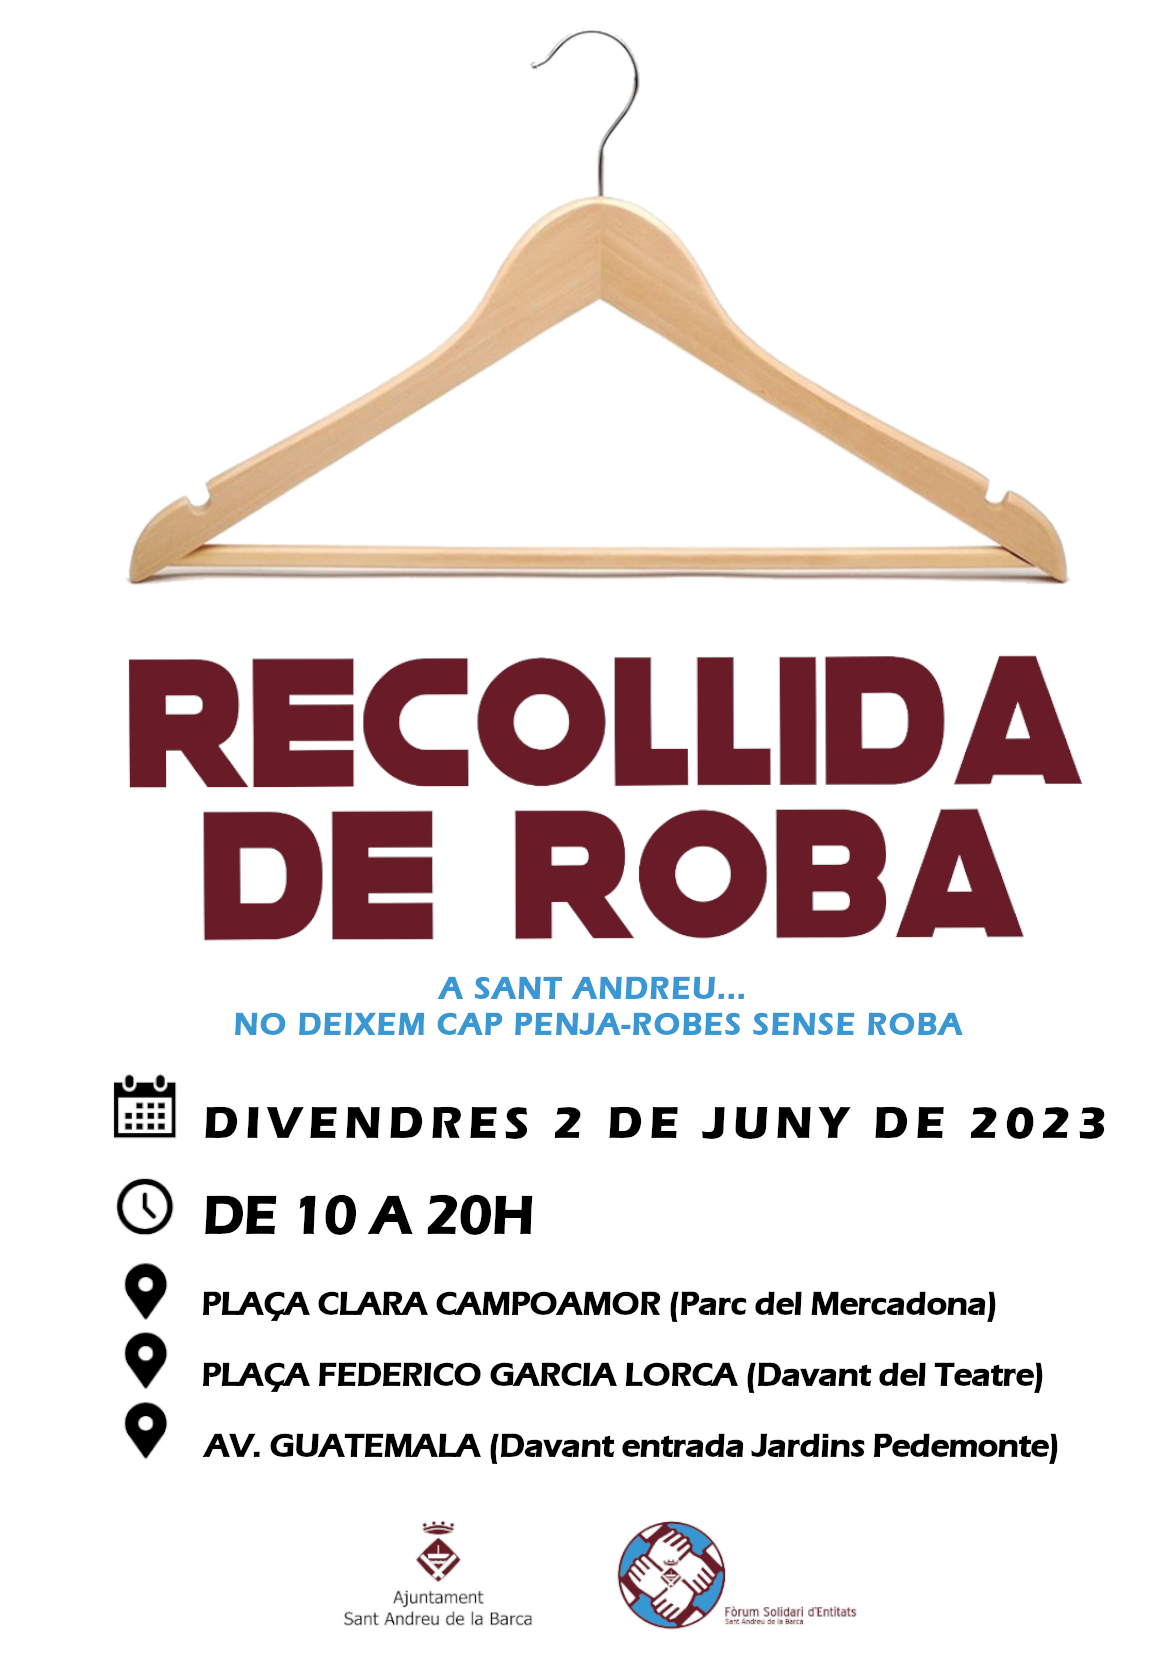 Sant Andreu de la Barca organitza una nova campanya de recollida de roba